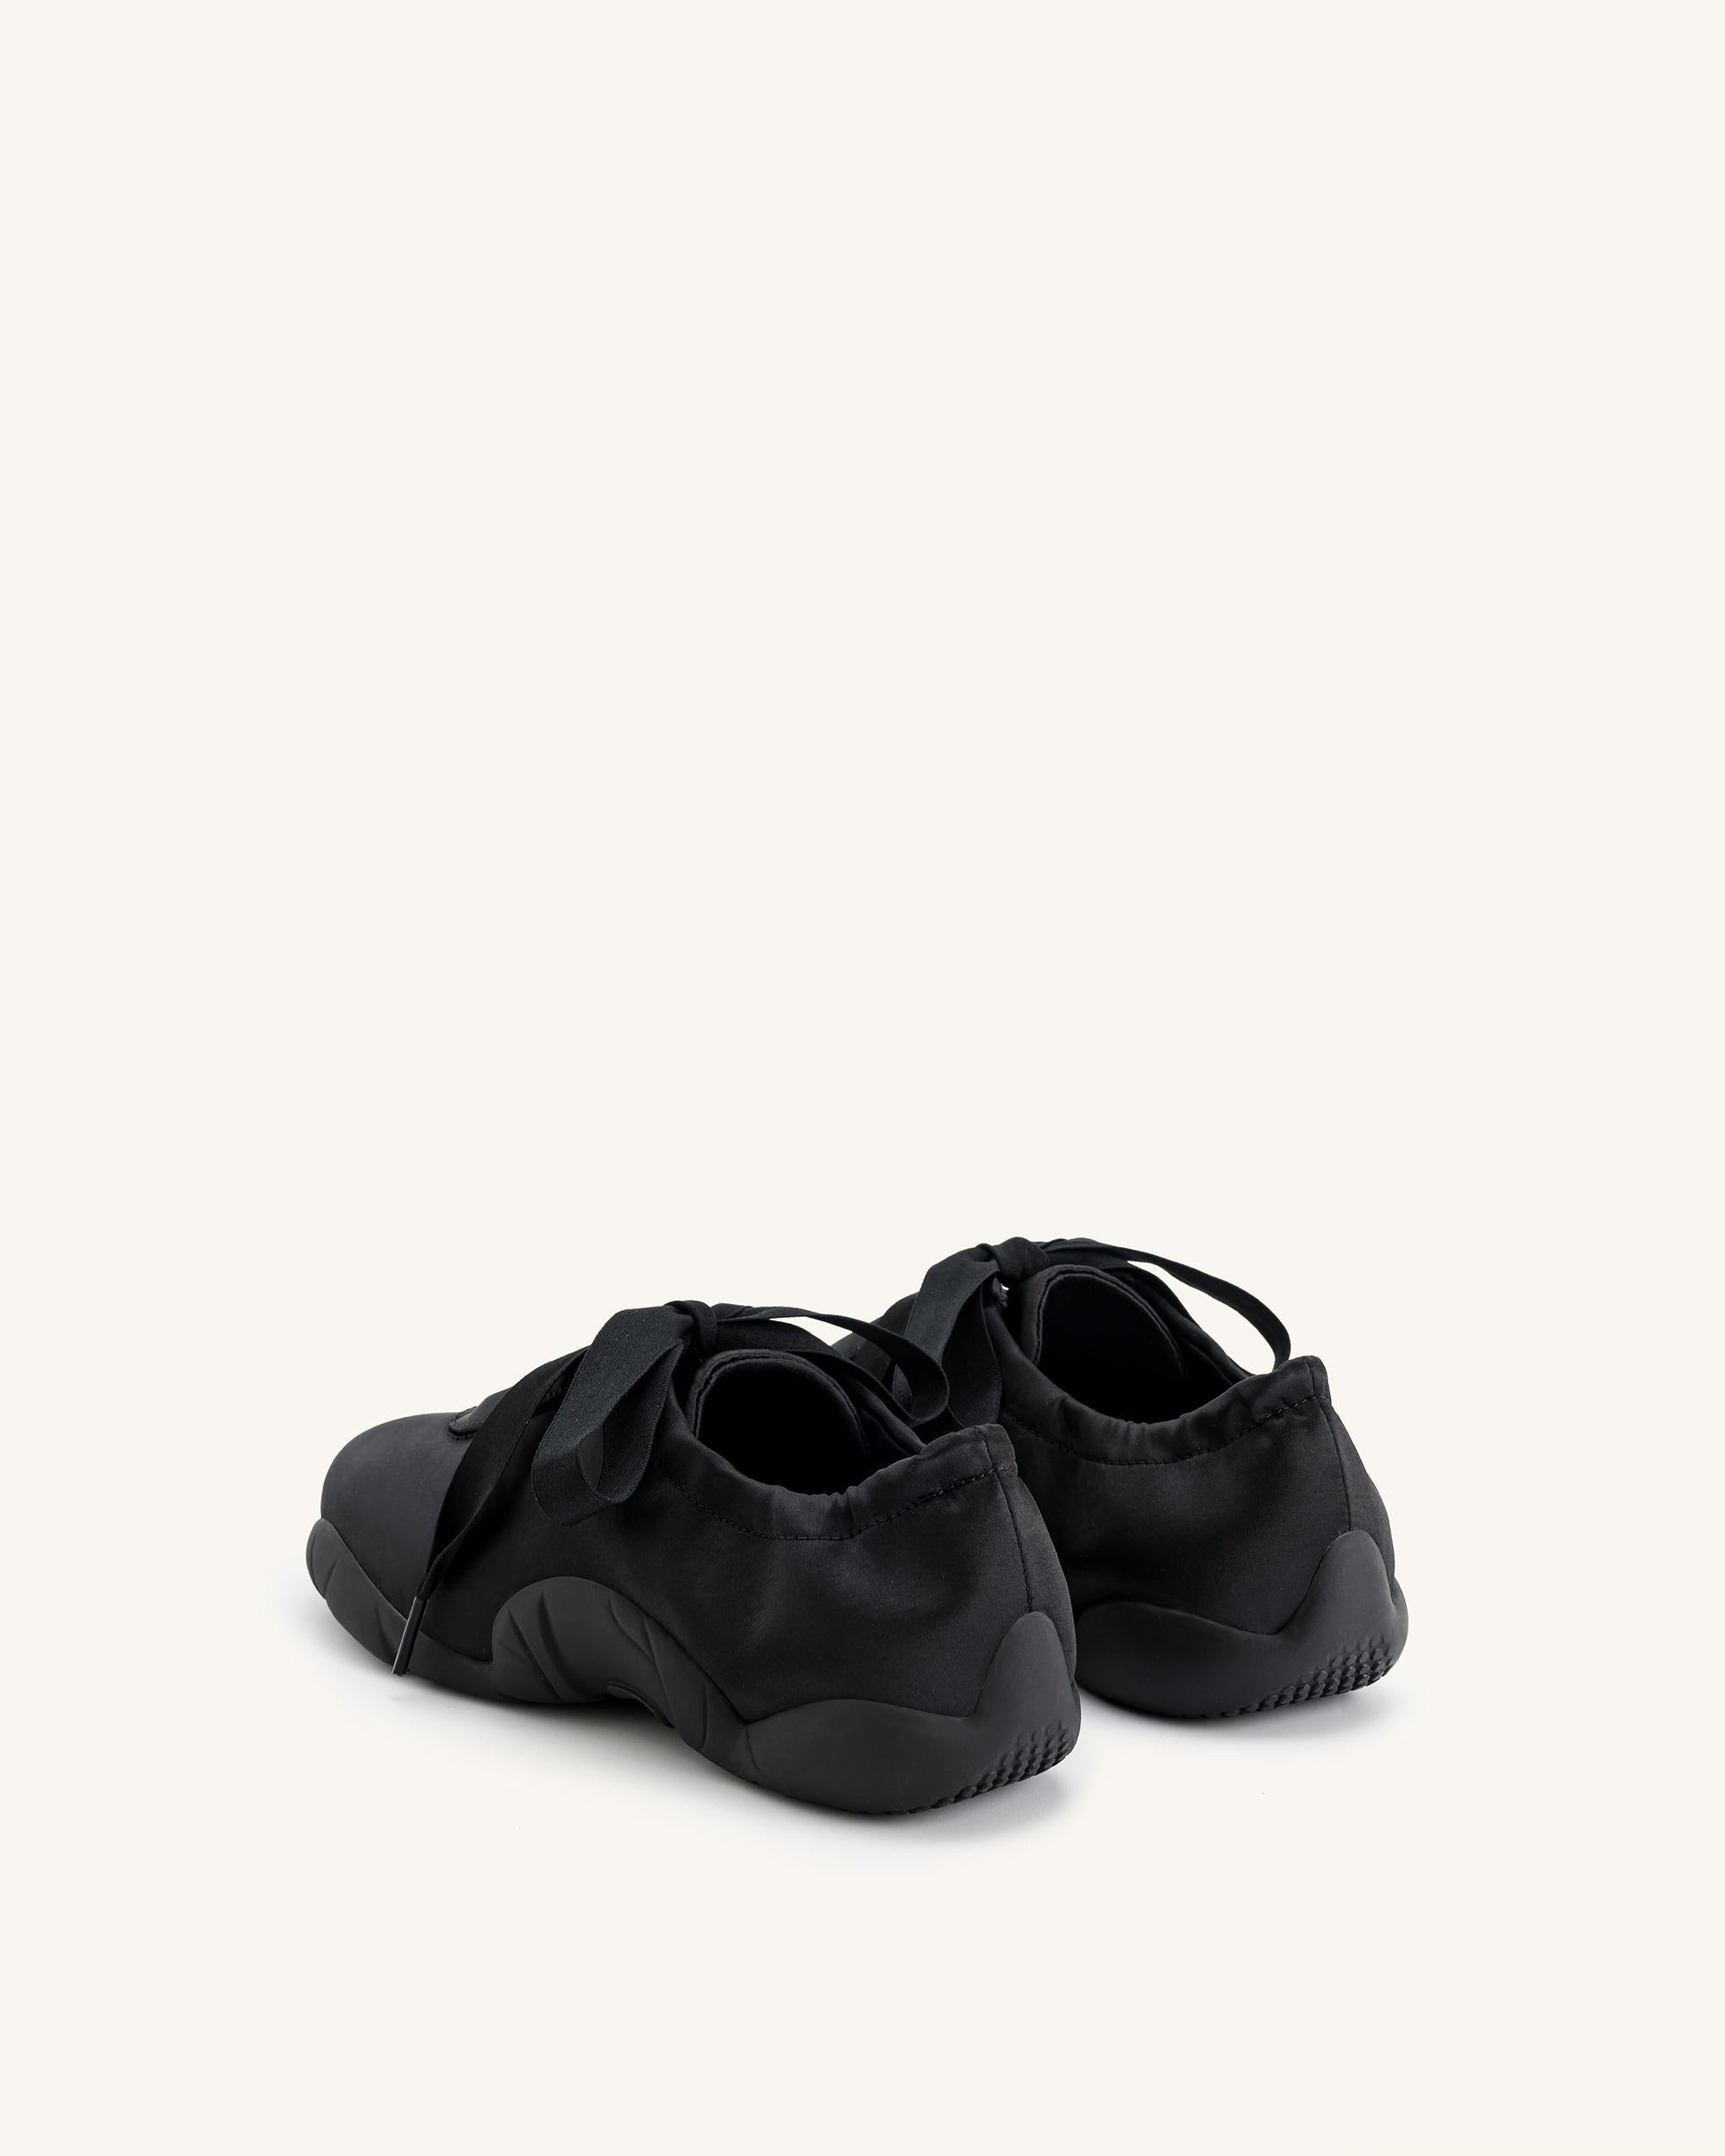 Flavia 芭蕾舞鞋 - 黑色